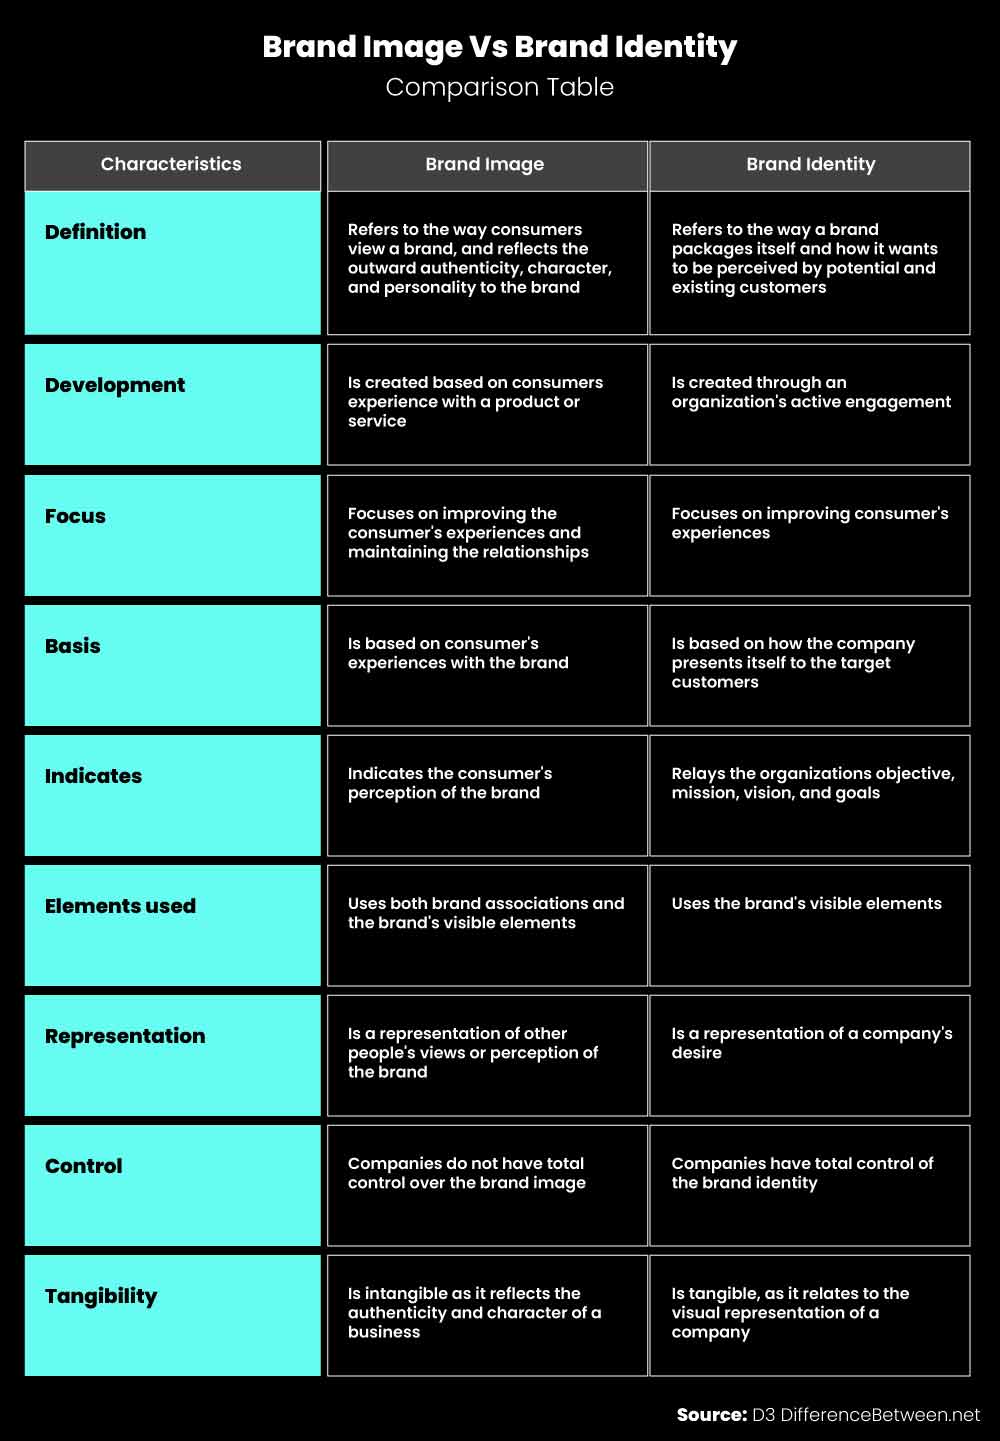 Brand Identity Vs. Brand Image - Comparison Table